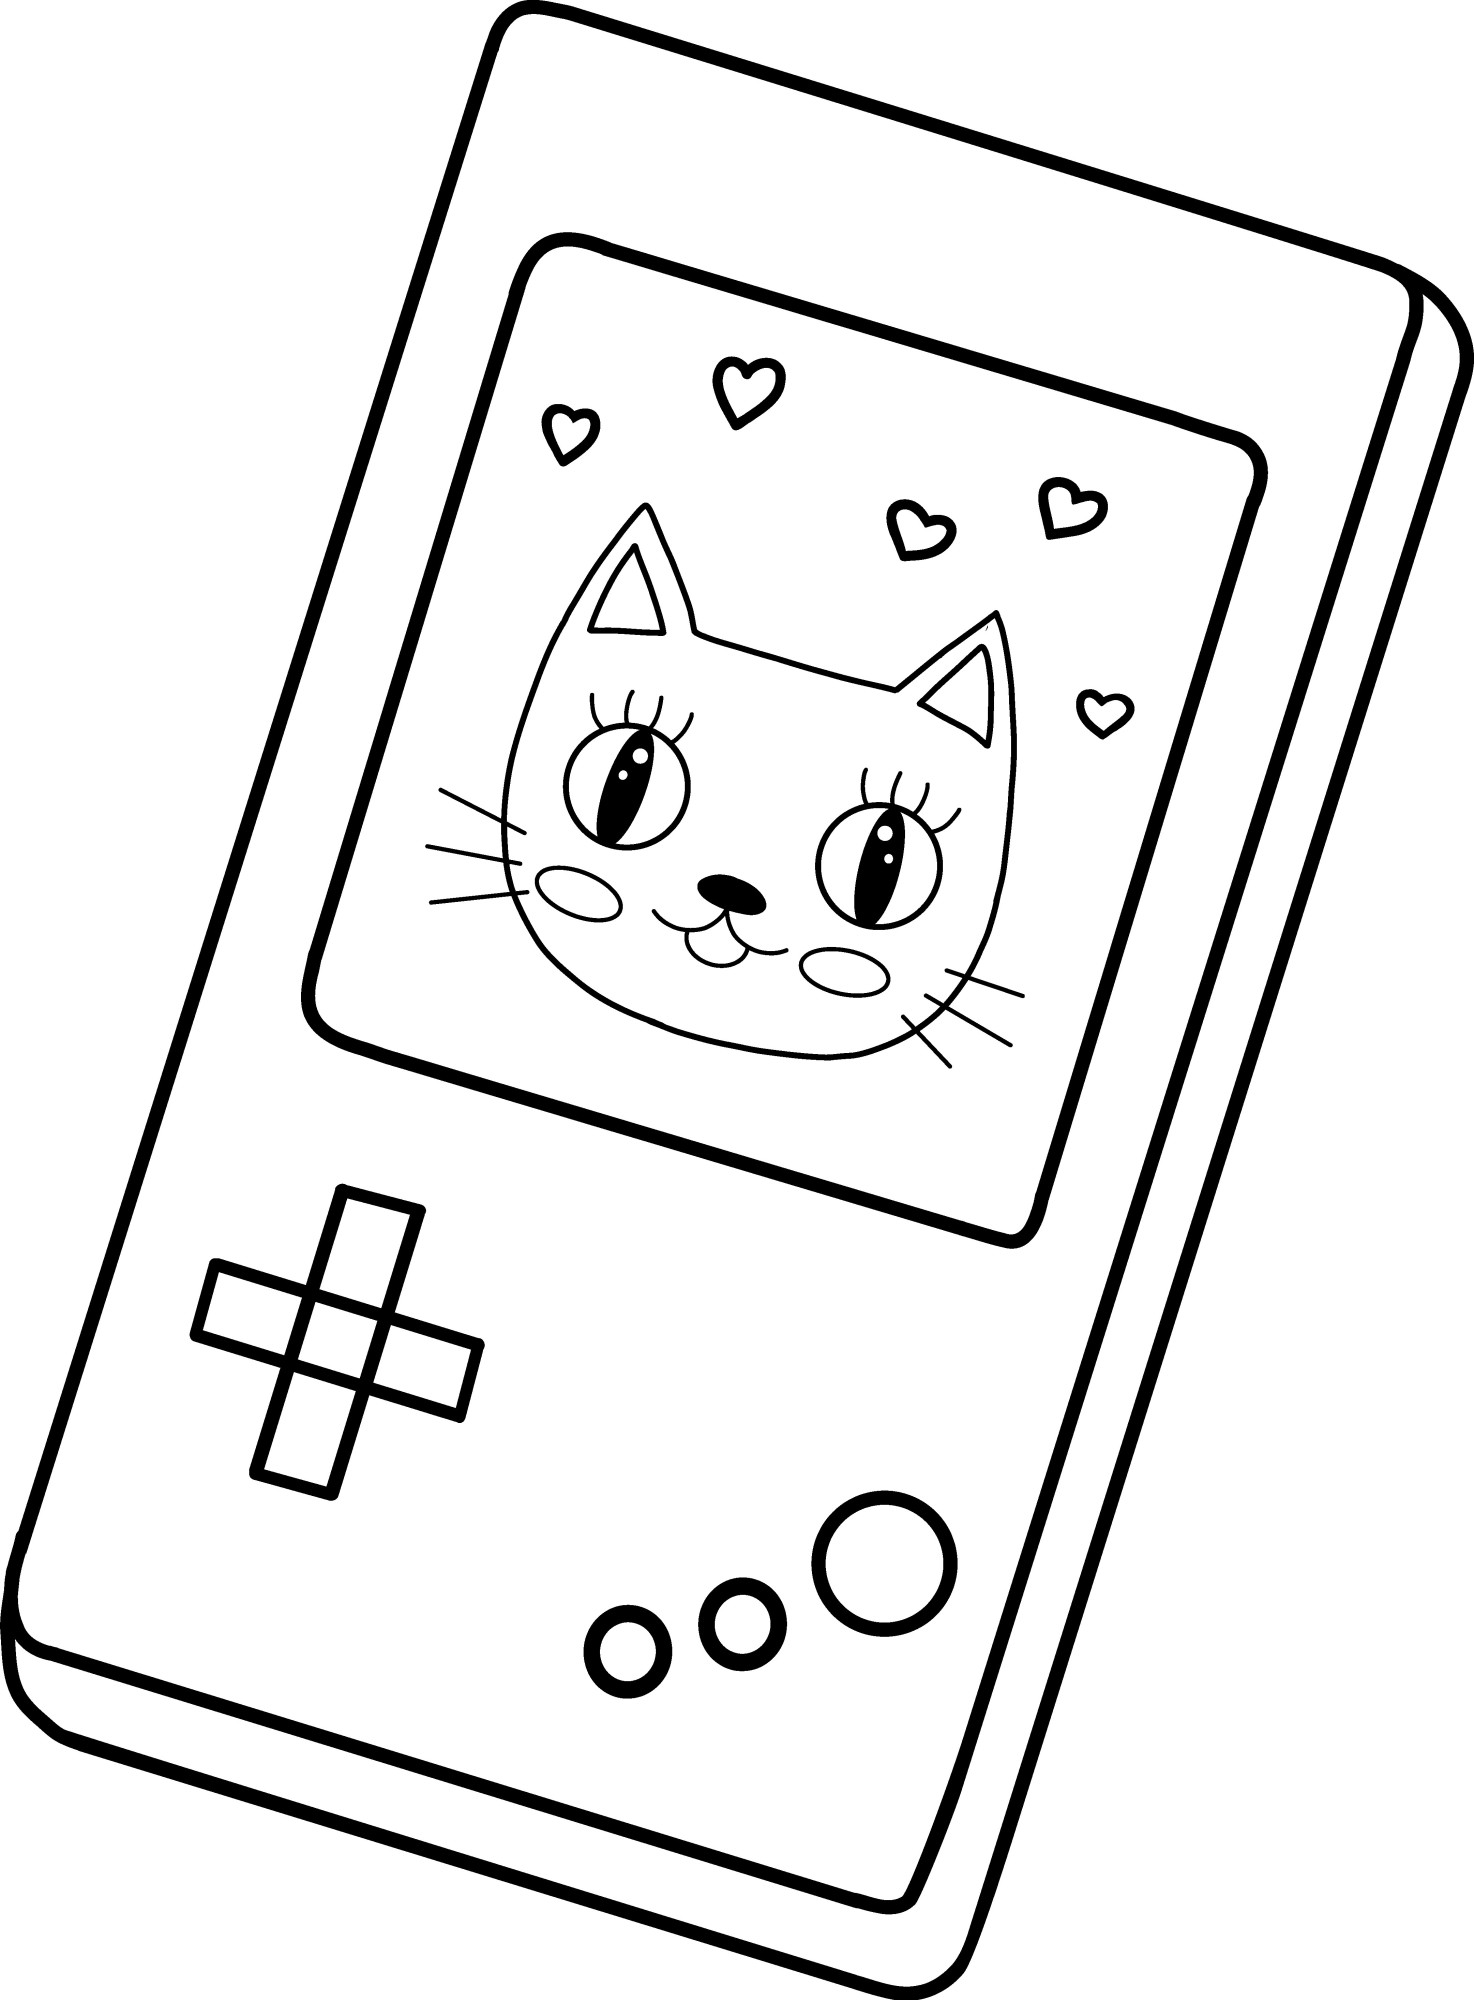 Раскраска для детей: игрушка тетрис с котиком на экране